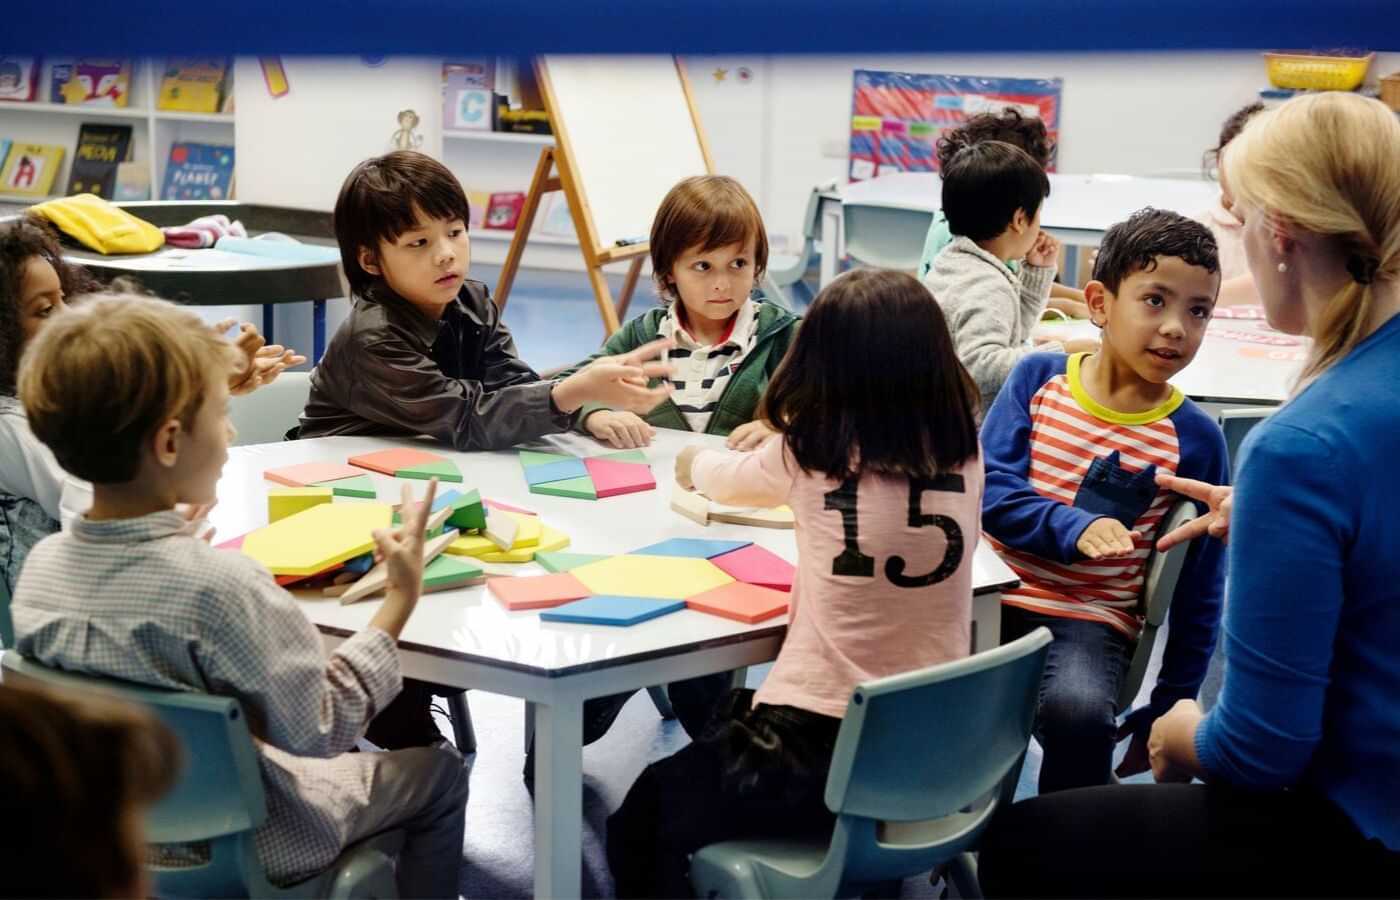  Autismo nas Escolas: As Escolas Brasileiras Estão Preparadas para a Inclusão? 